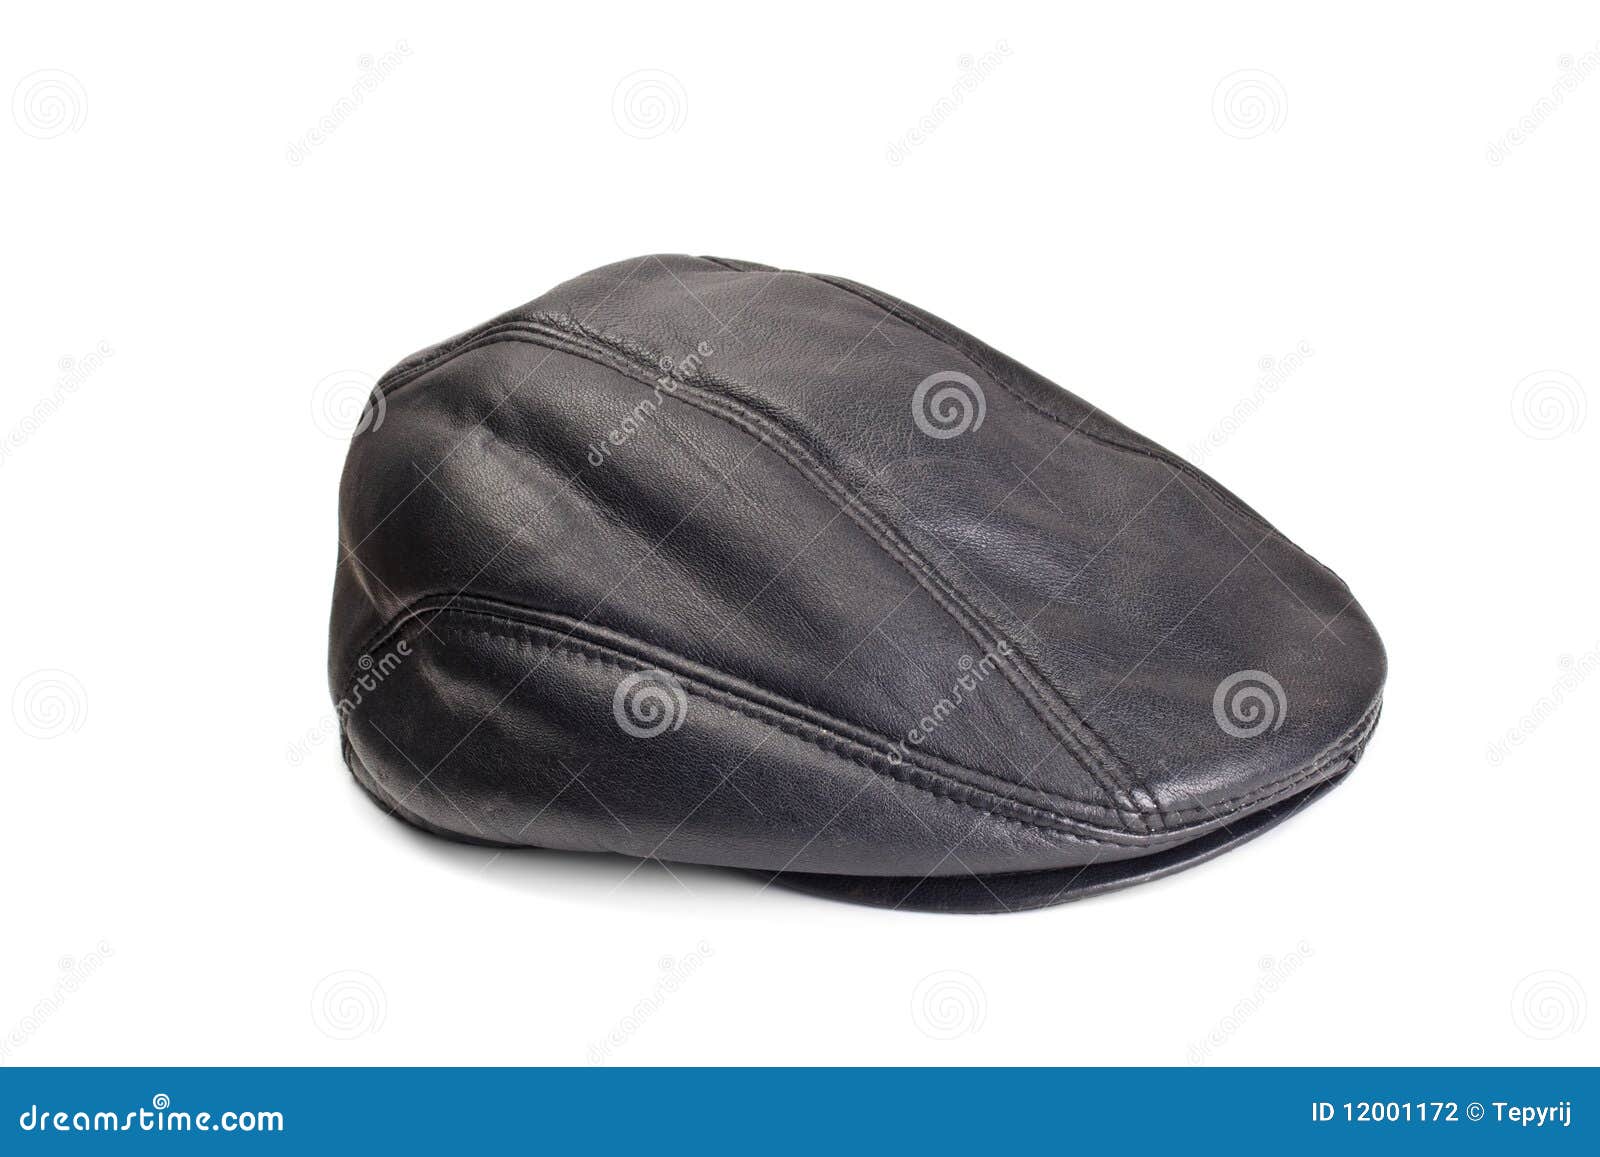 Peaked cap stock photo. Image of clothing, headdress - 12001172